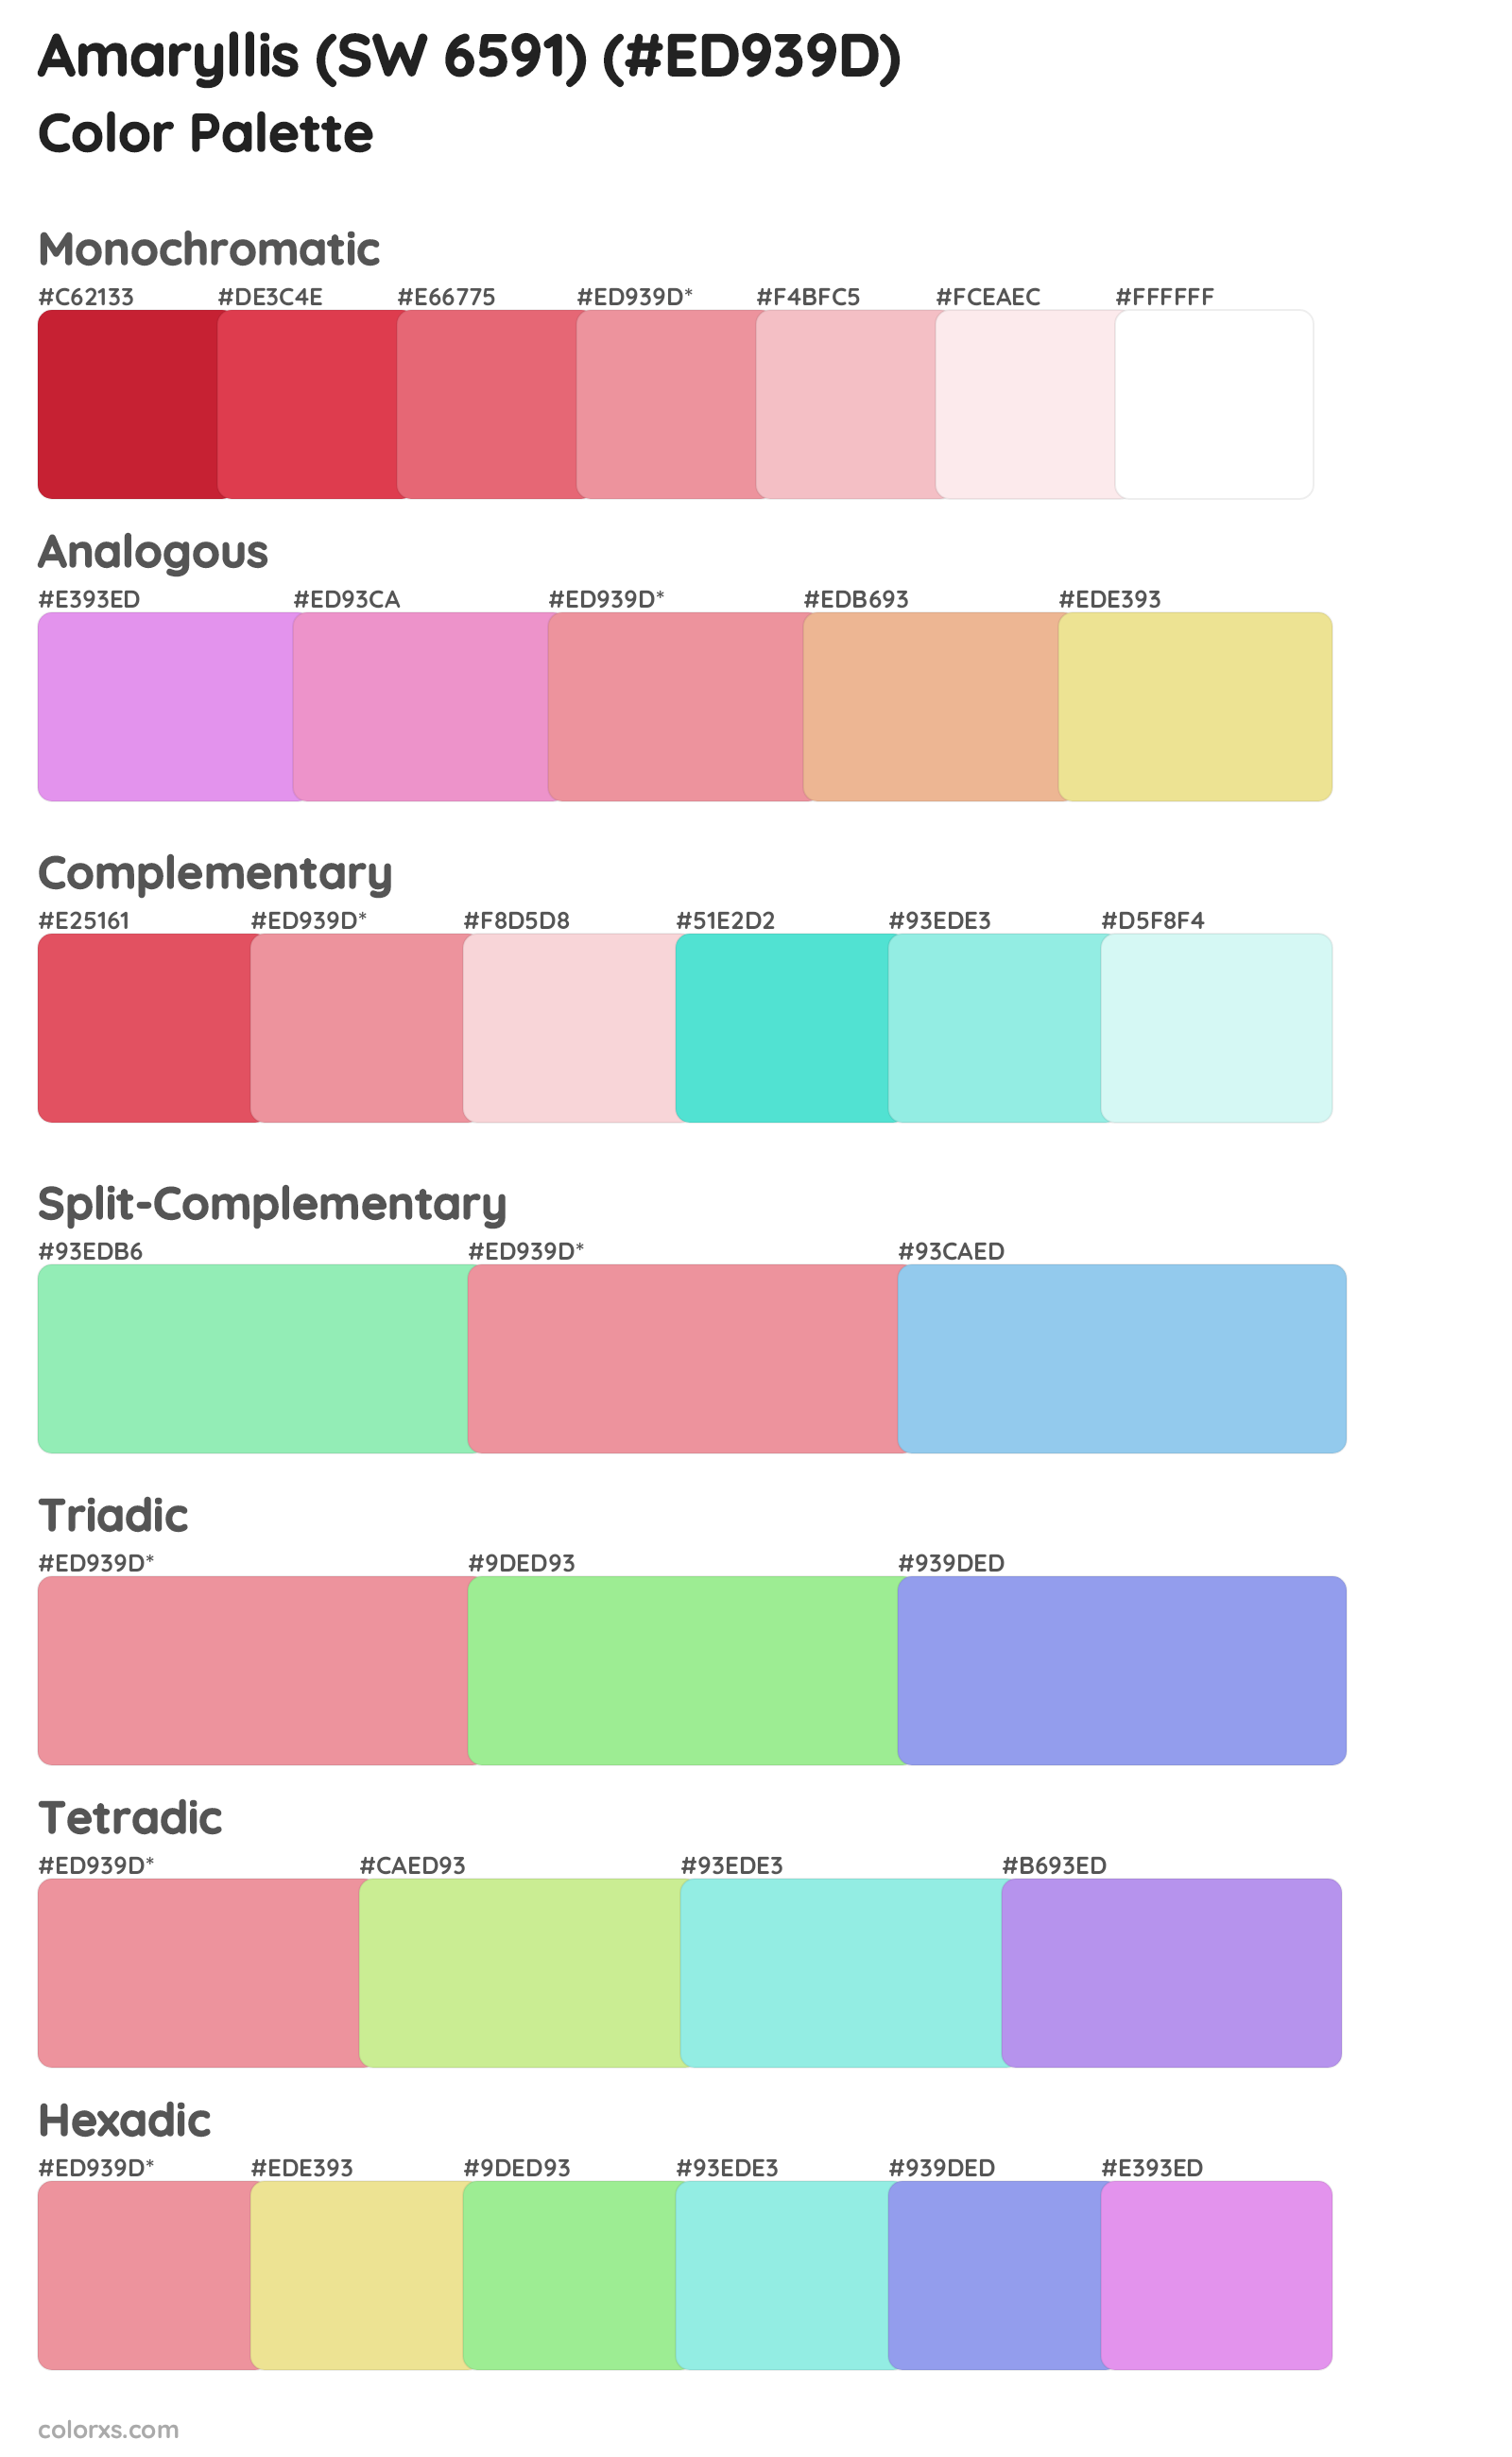 Amaryllis (SW 6591) Color Scheme Palettes